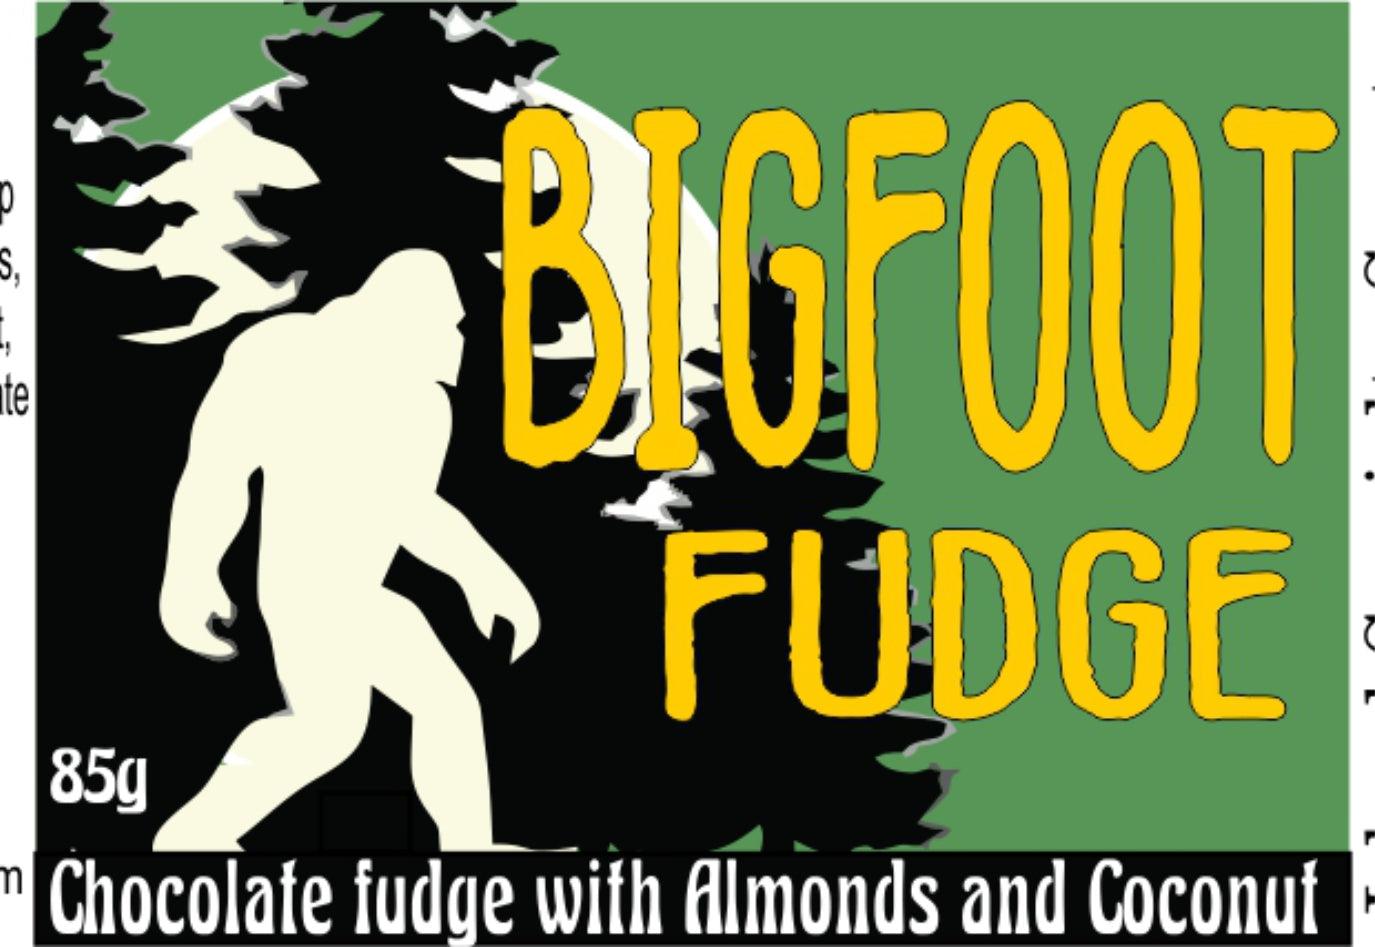 Bigfoot Fudge in a Jar with a Spoon - Ulla-La Boutique